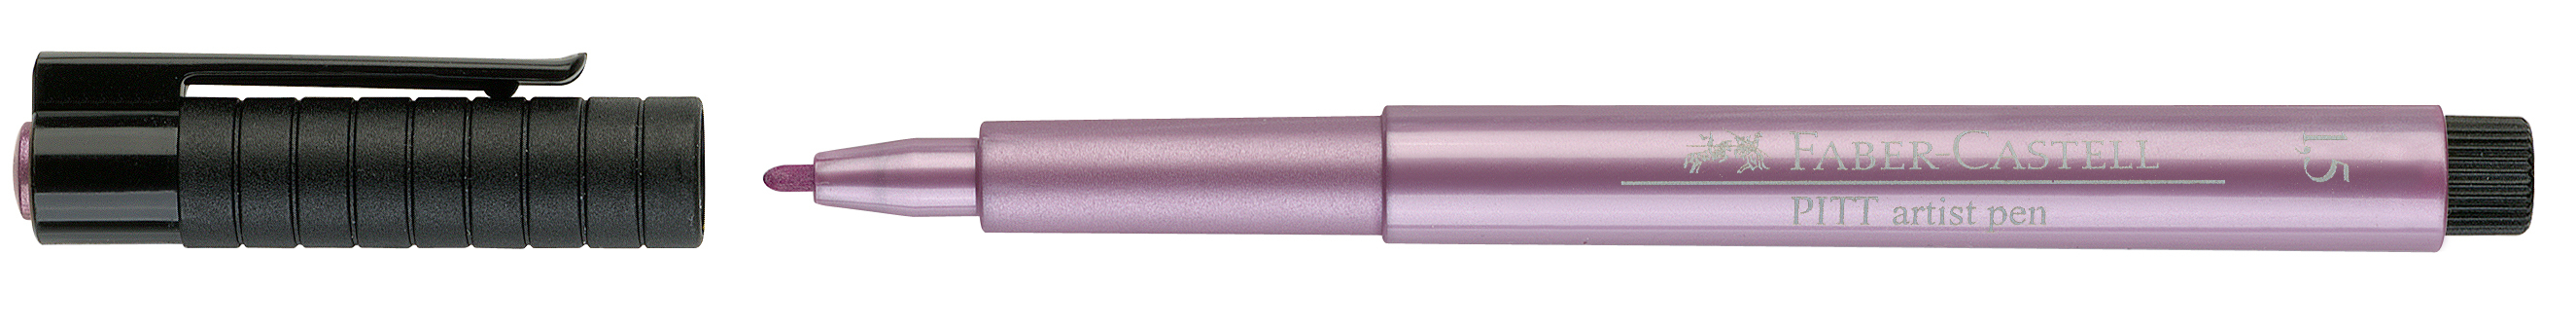 FABER-CASTELL Pitt Artist Pen 1,5mm 167390 rubin-metallic rubin-metallic